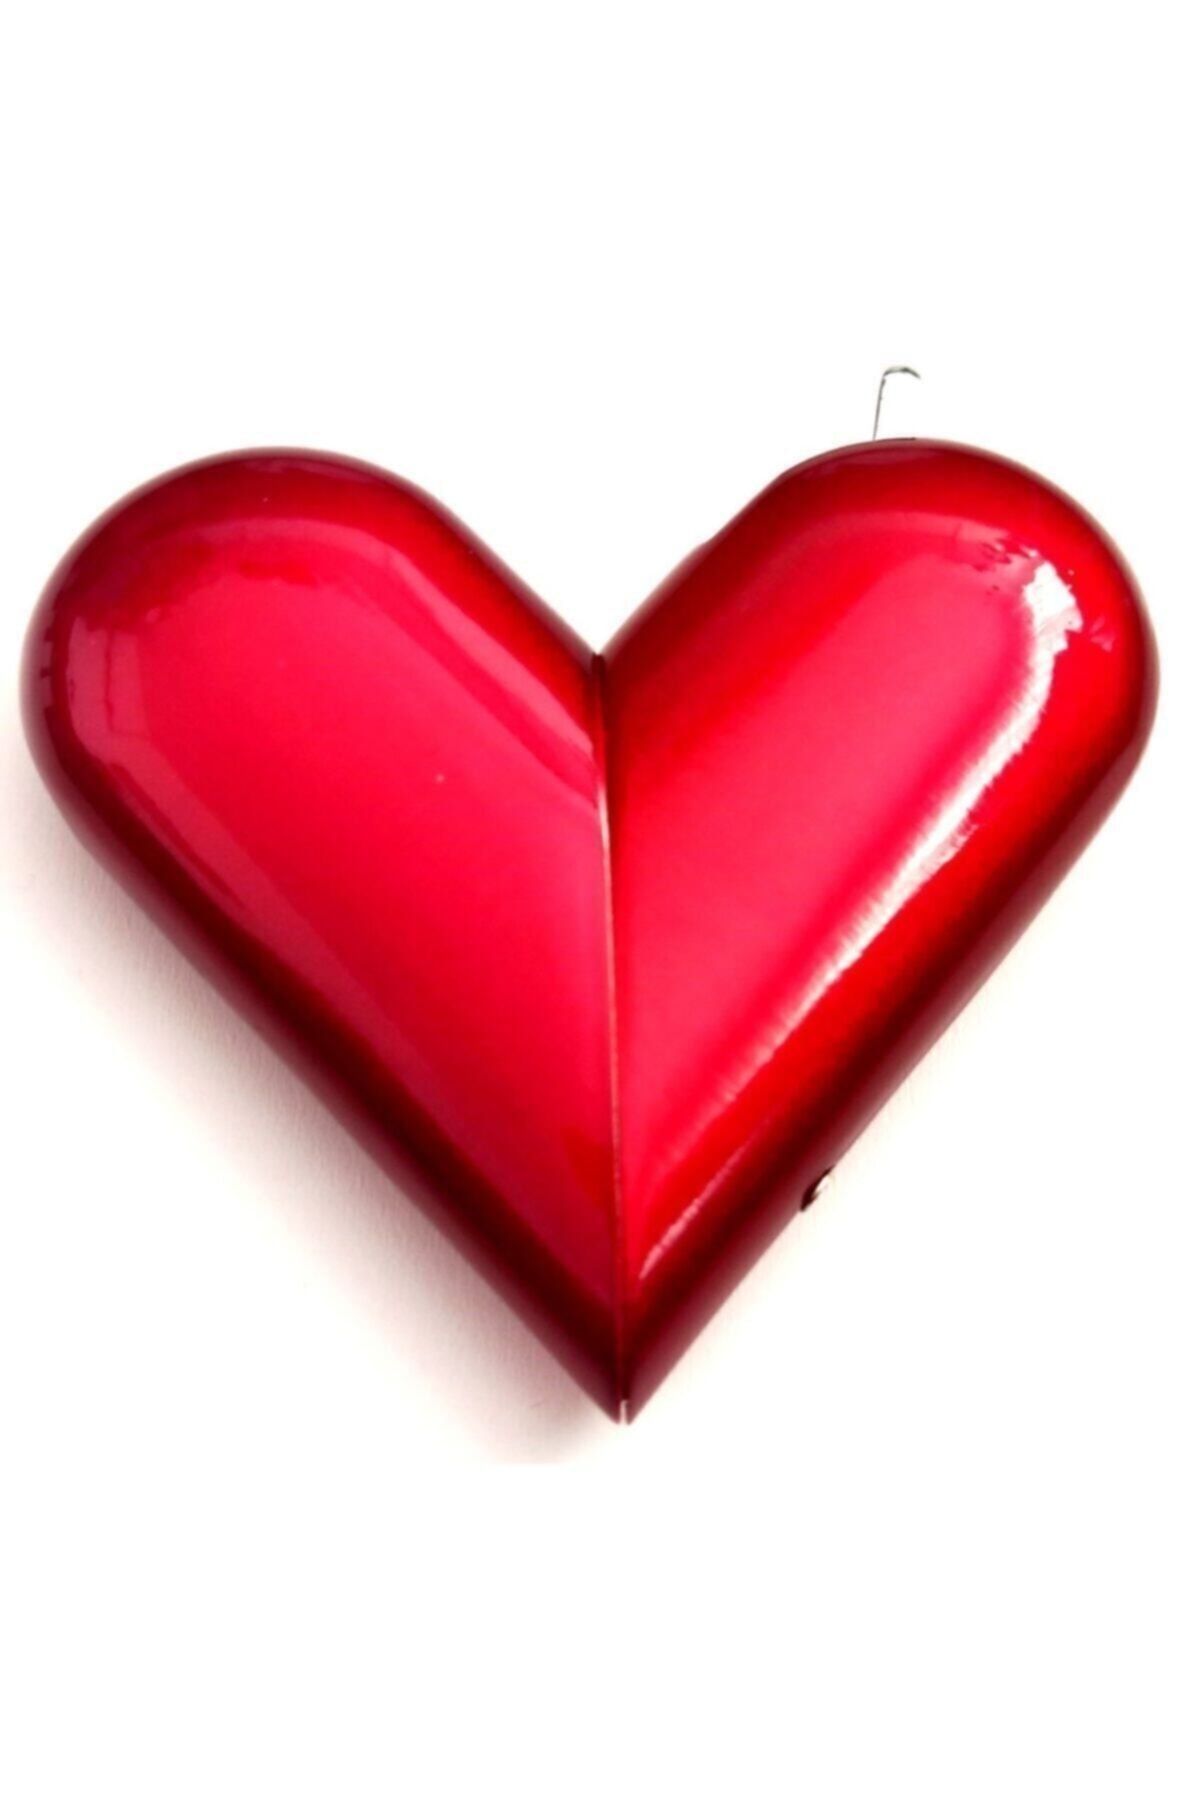 Silvio Monetti Kırmızı Kalpli Gazlı Aşk Çakmağı, Sevgiliye Hediye Ister Kalp Şeklinde Ister Düz Çakmak